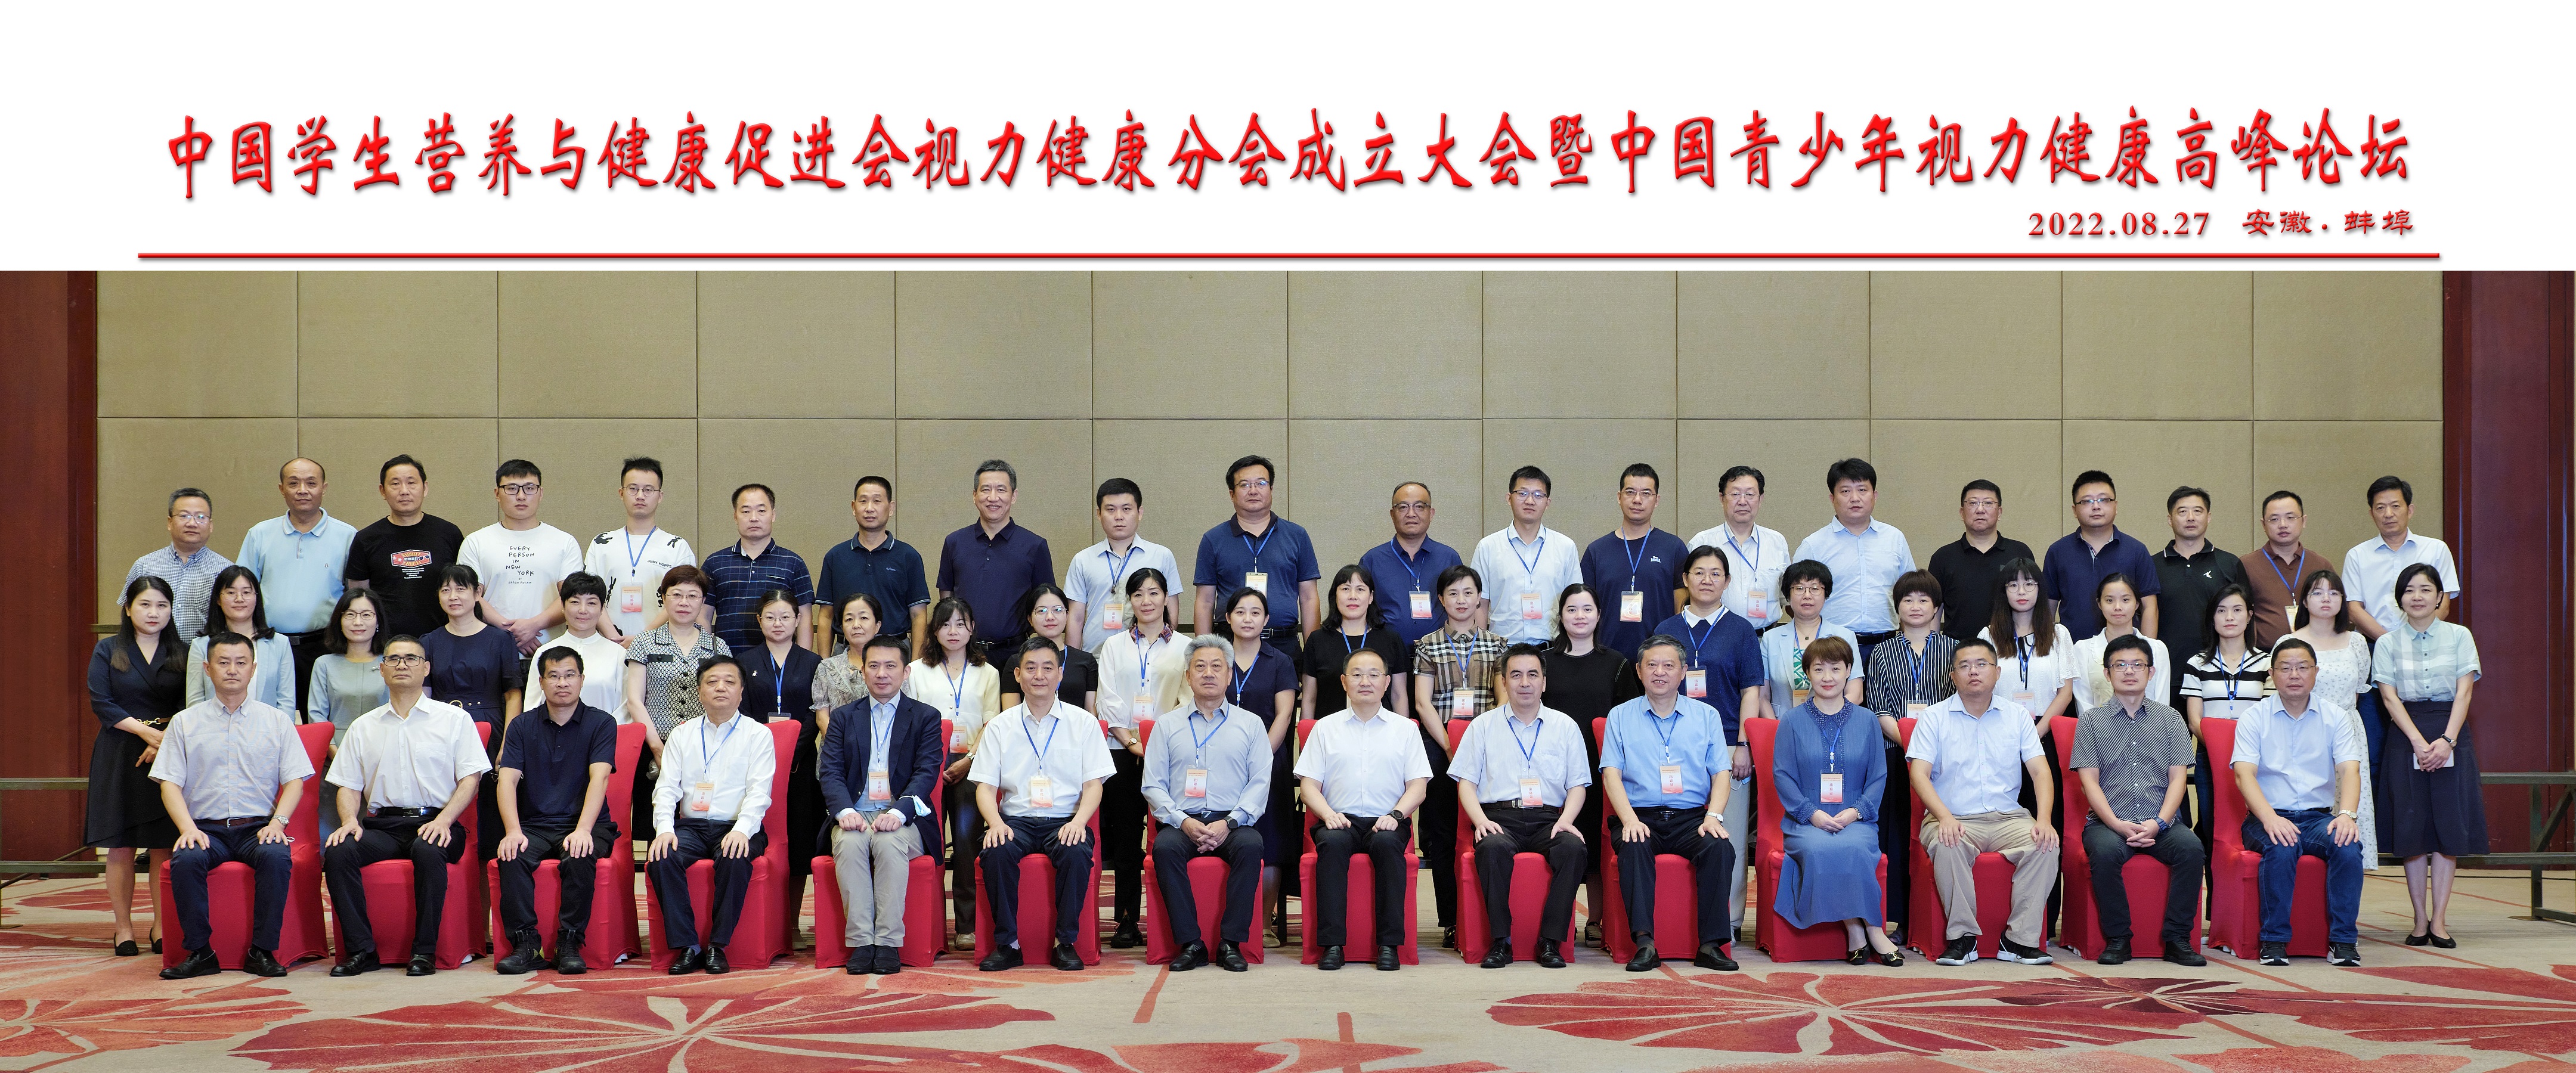 中国学生营养与健康促进会召开视力健康分会成立大会暨儿童青少年视力健康研究峰会